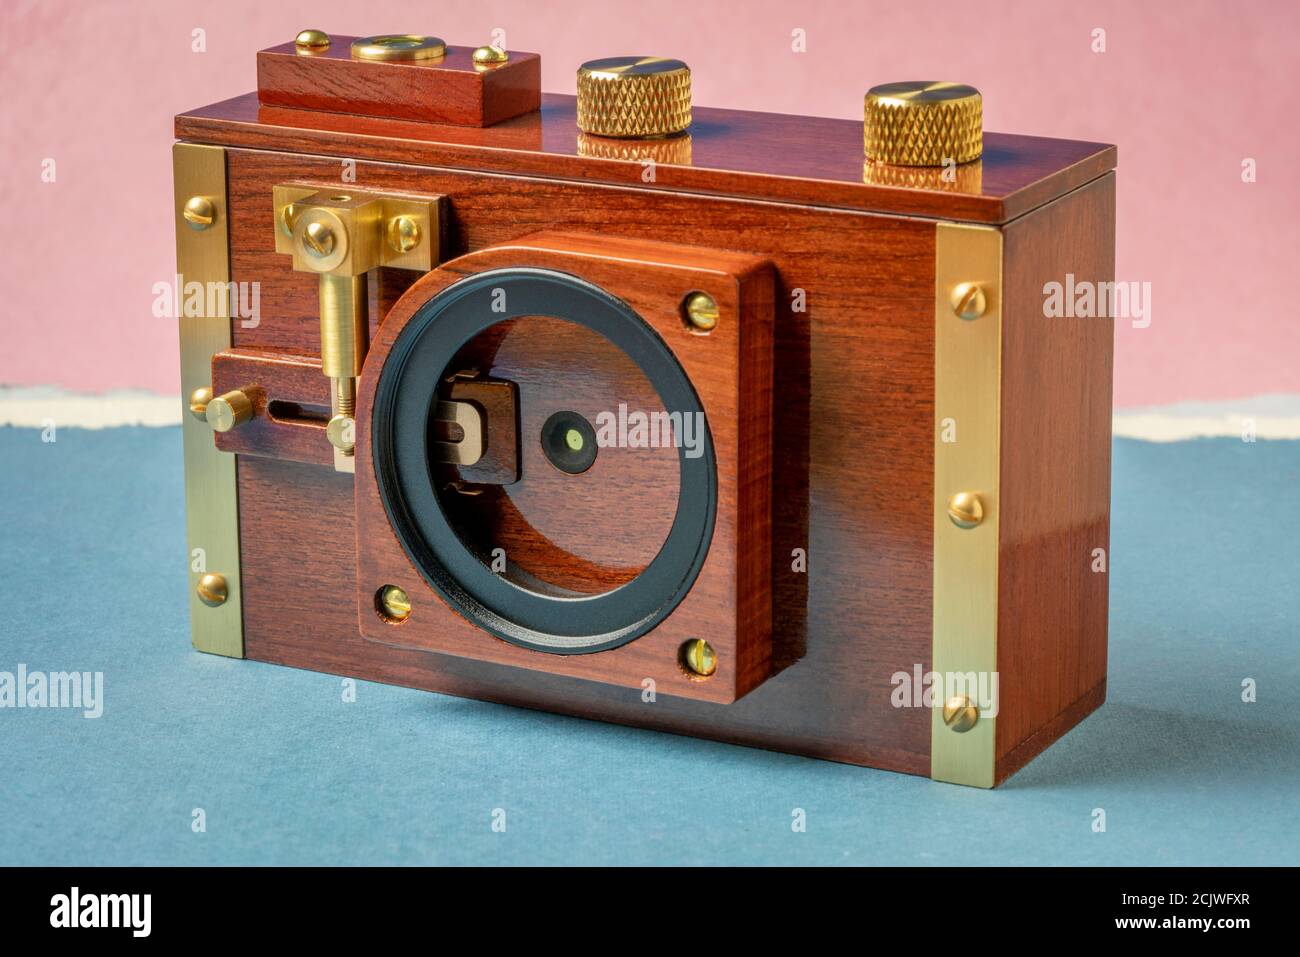 fotocamera pinhole con pellicola di formato medio con montaggio del filtro e meccanismo dell'otturatore, concetto di fotografia alternativo Foto Stock